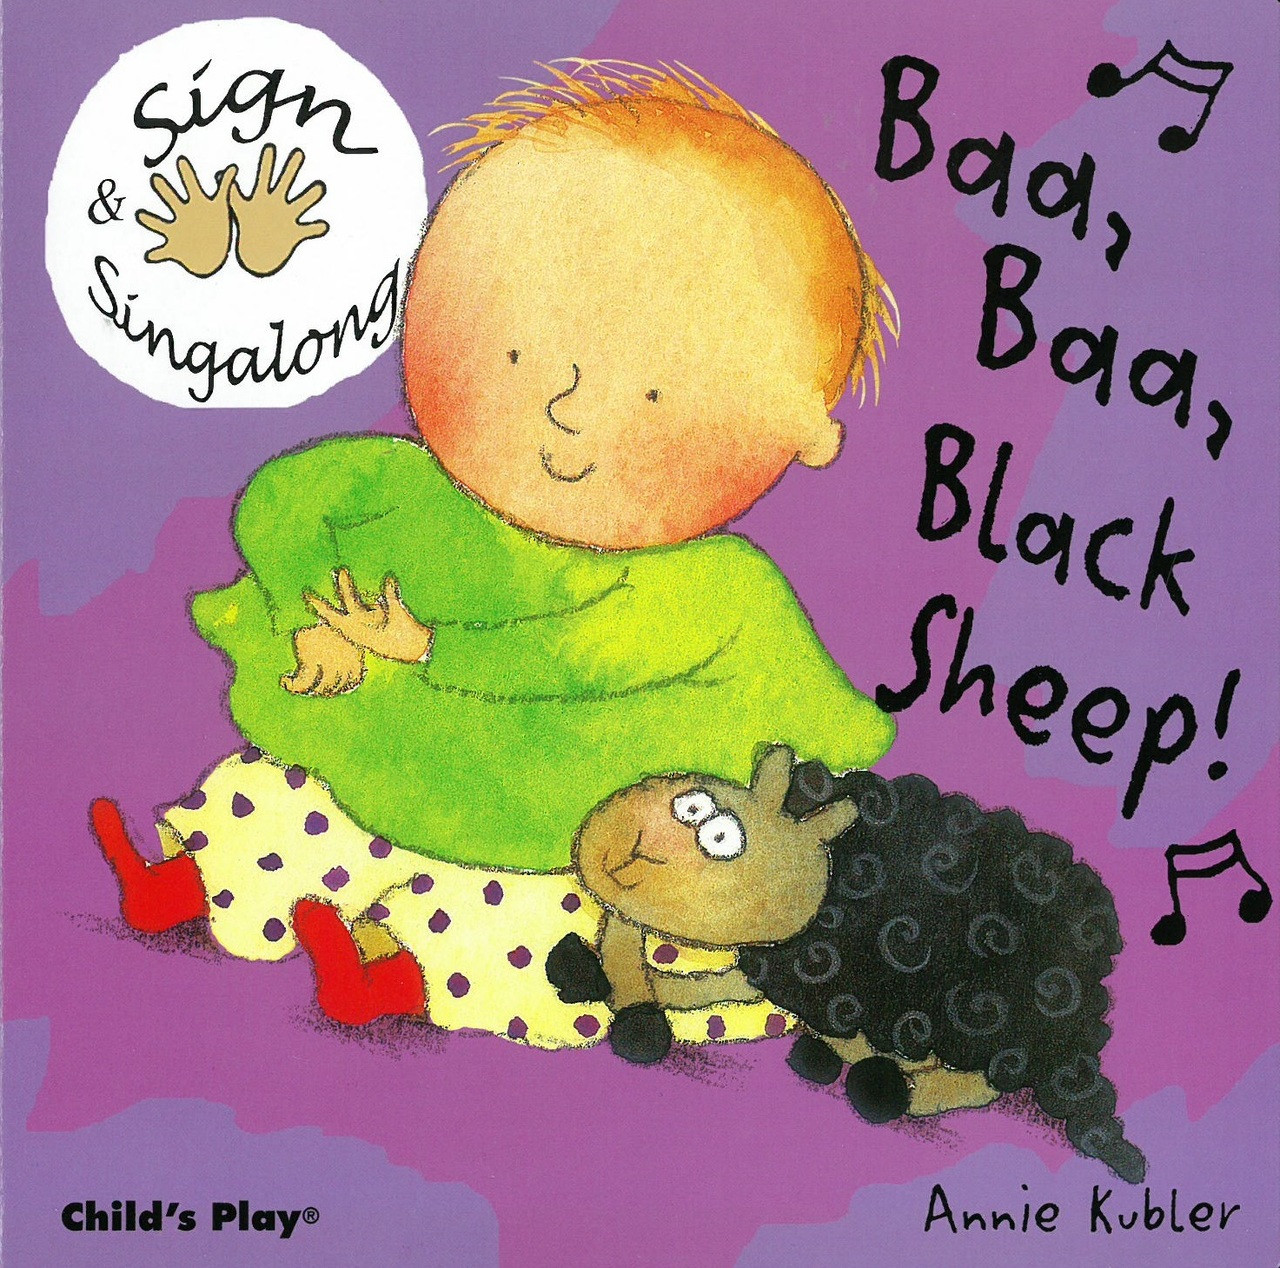 Baby Safe Finishes Baa Baa Black Sheep